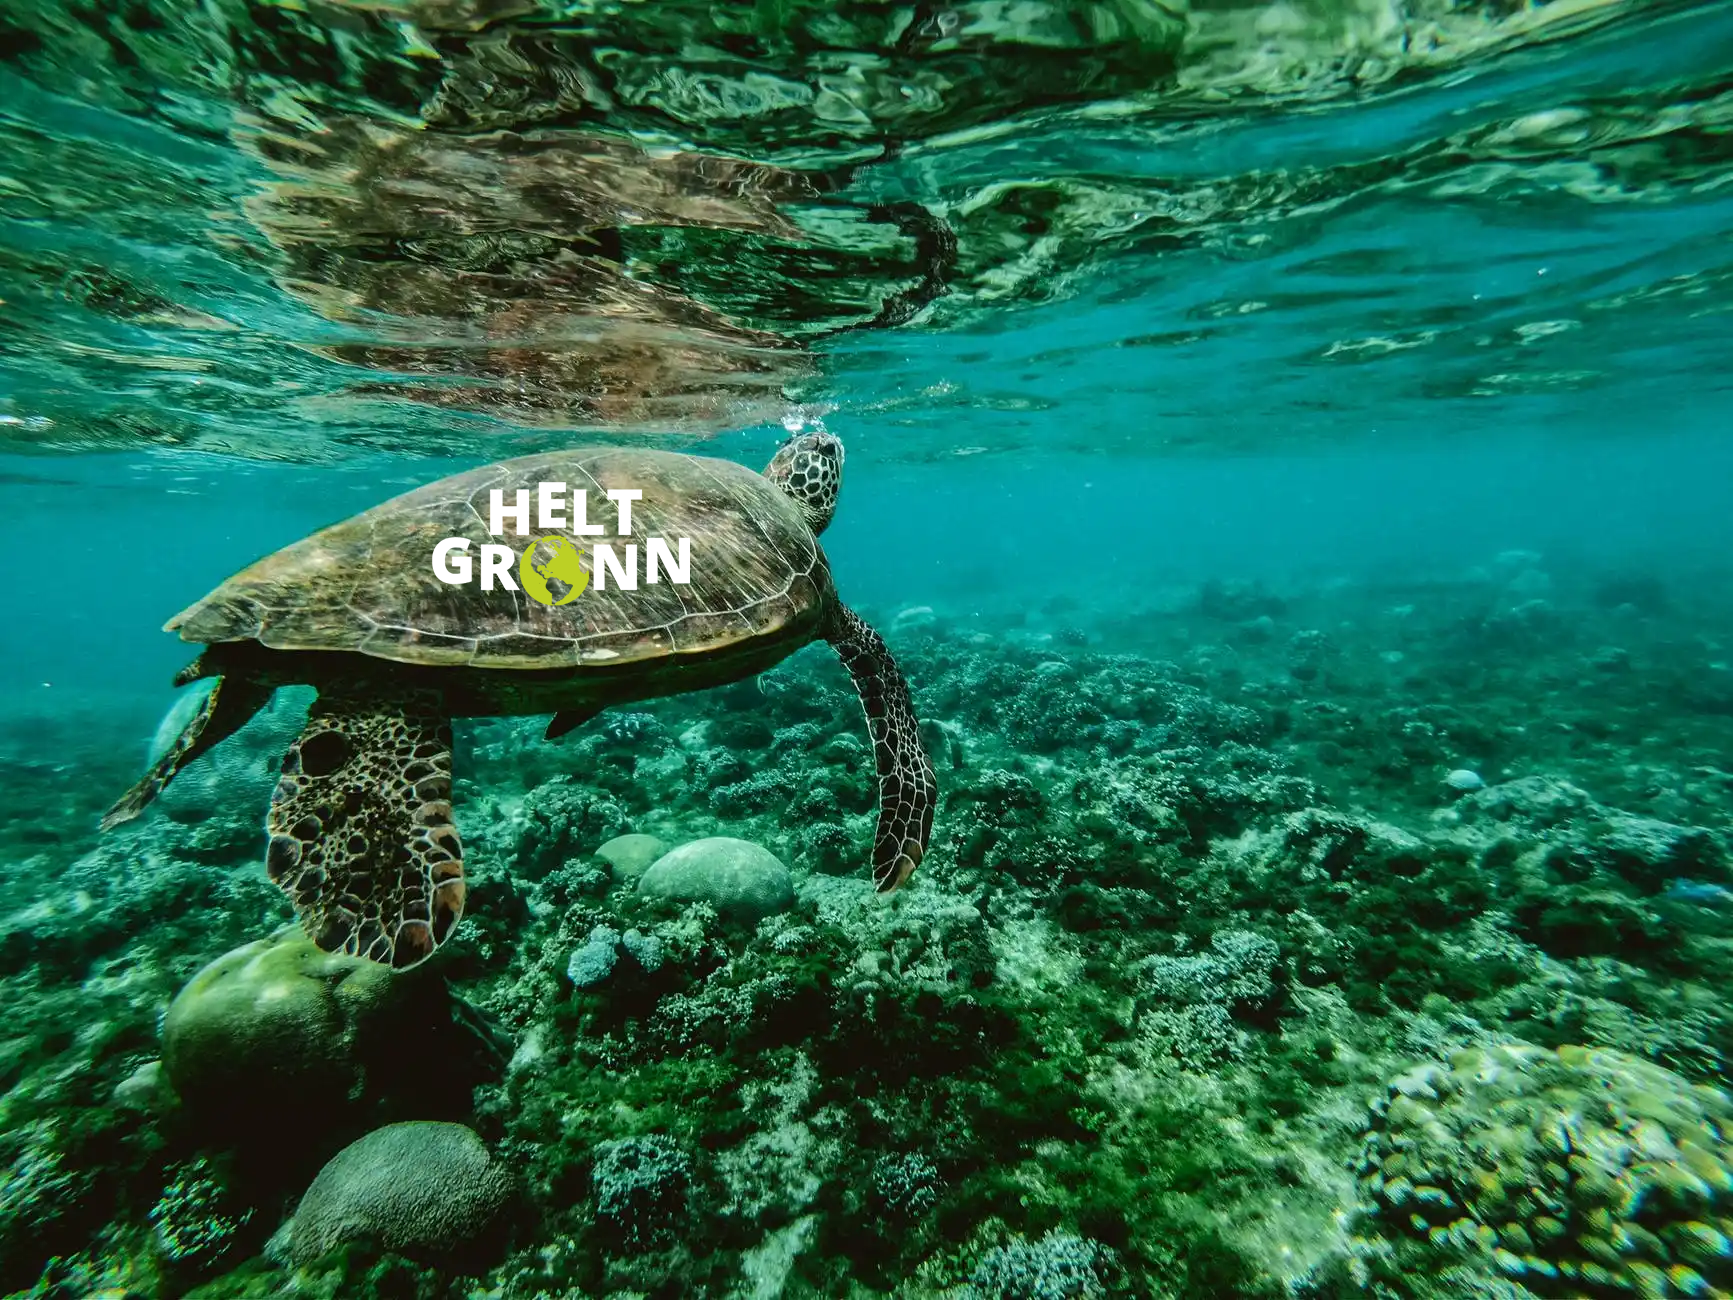 En skilpadde under vann med logoen Helt Grønn